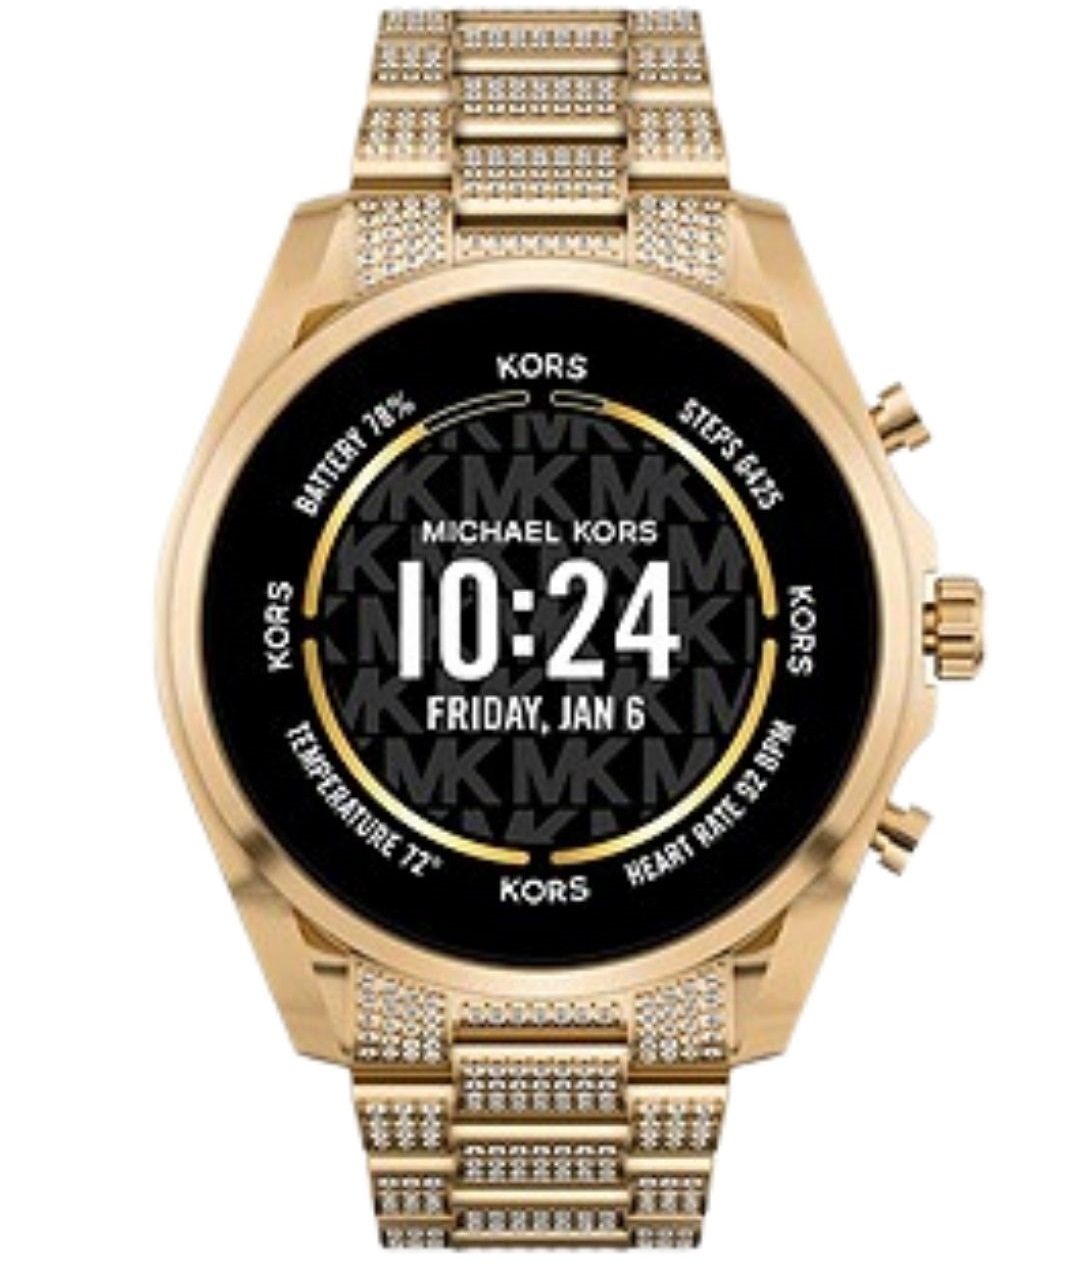 Smartwatch Michael Kors Gen 6 em aço inoxidável Bradshaw em tom dourado